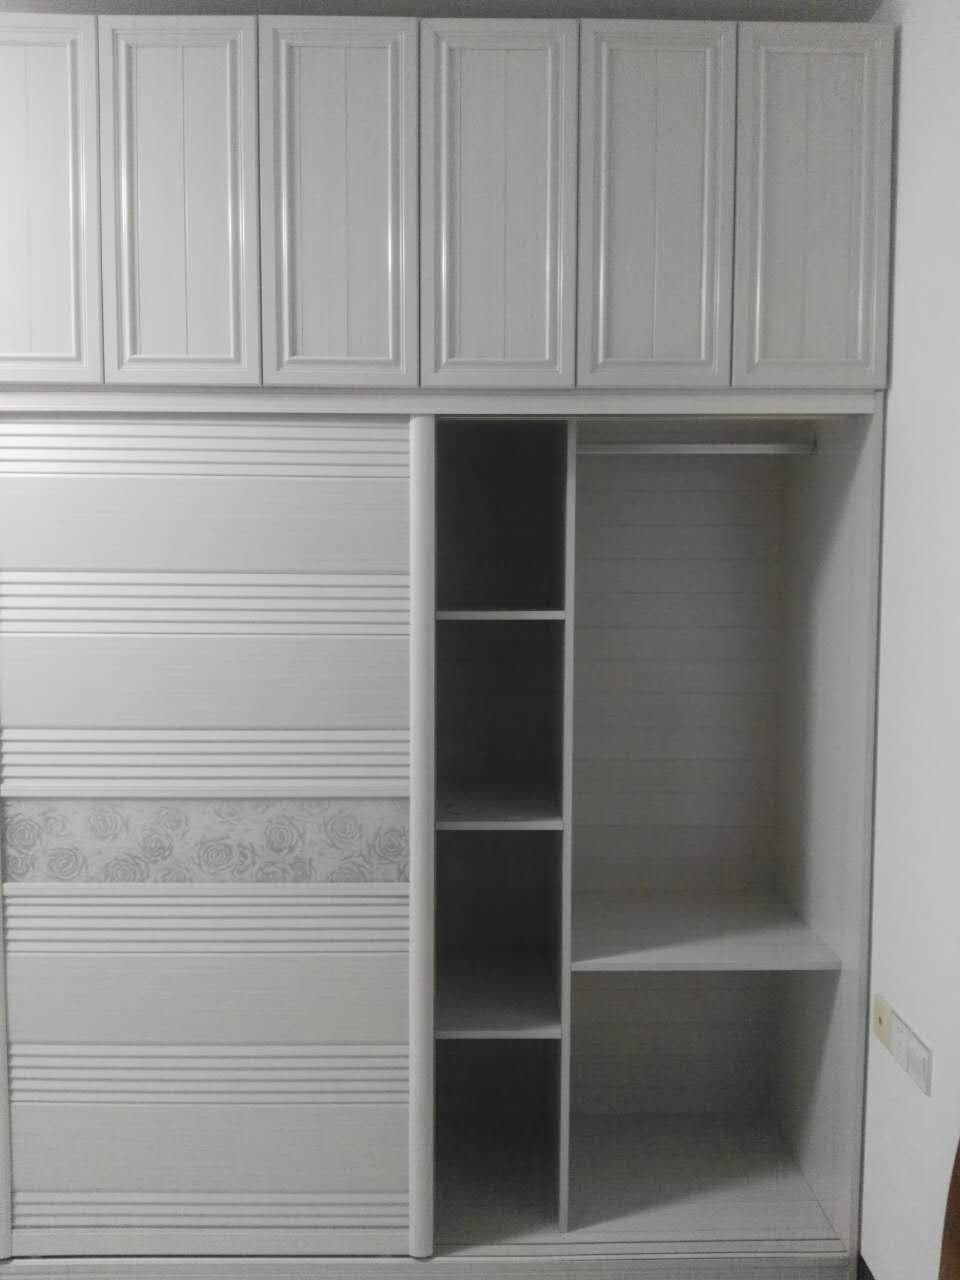 广东全铝衣柜门铝材,铝材型的衣柜有那些优点?